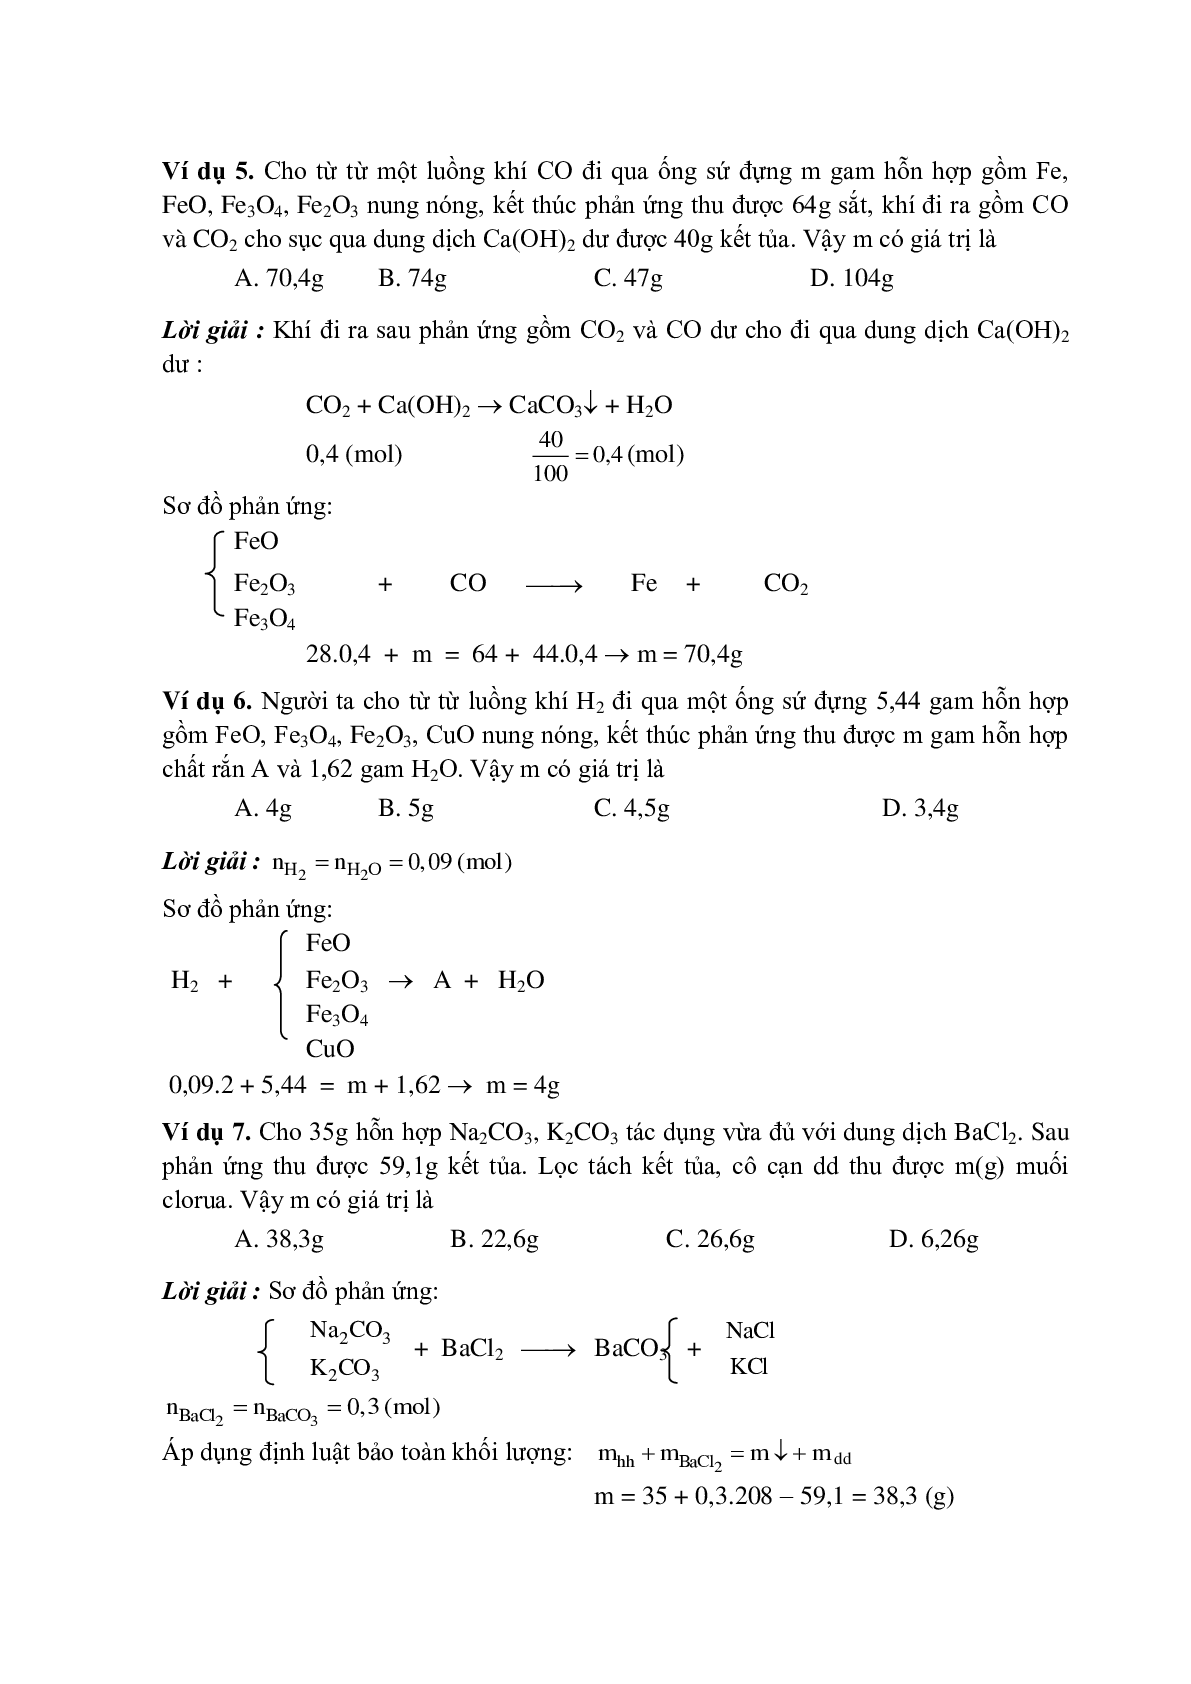 Lý thuyết, bài tập về Phương pháp bảo toàn khối lượng có đáp án (trang 3)